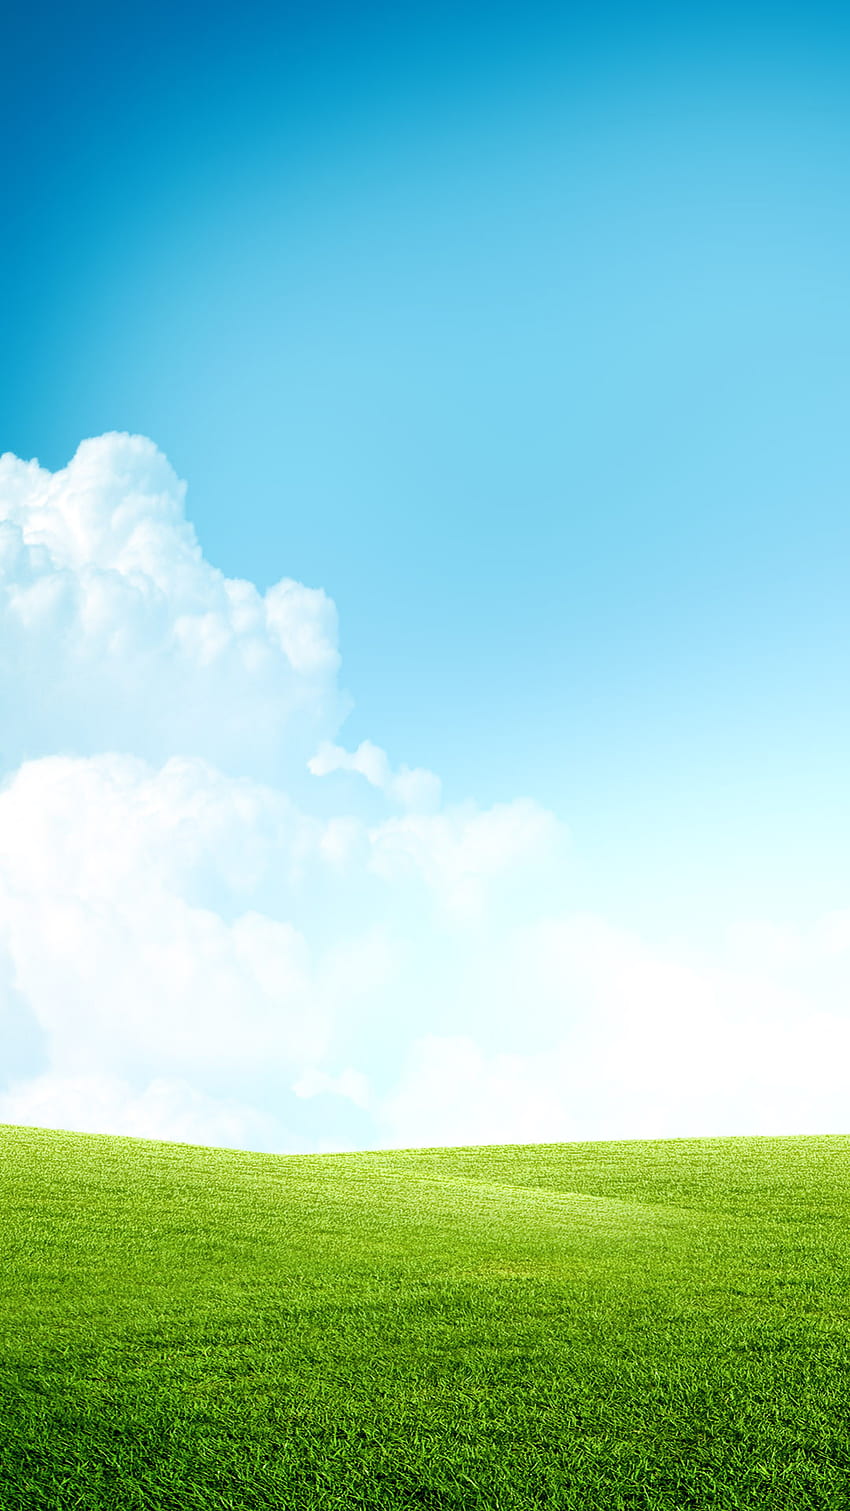 Grass Field Blue Sky Clouds Android , Green Grass dan Blue Sky wallpaper ponsel HD